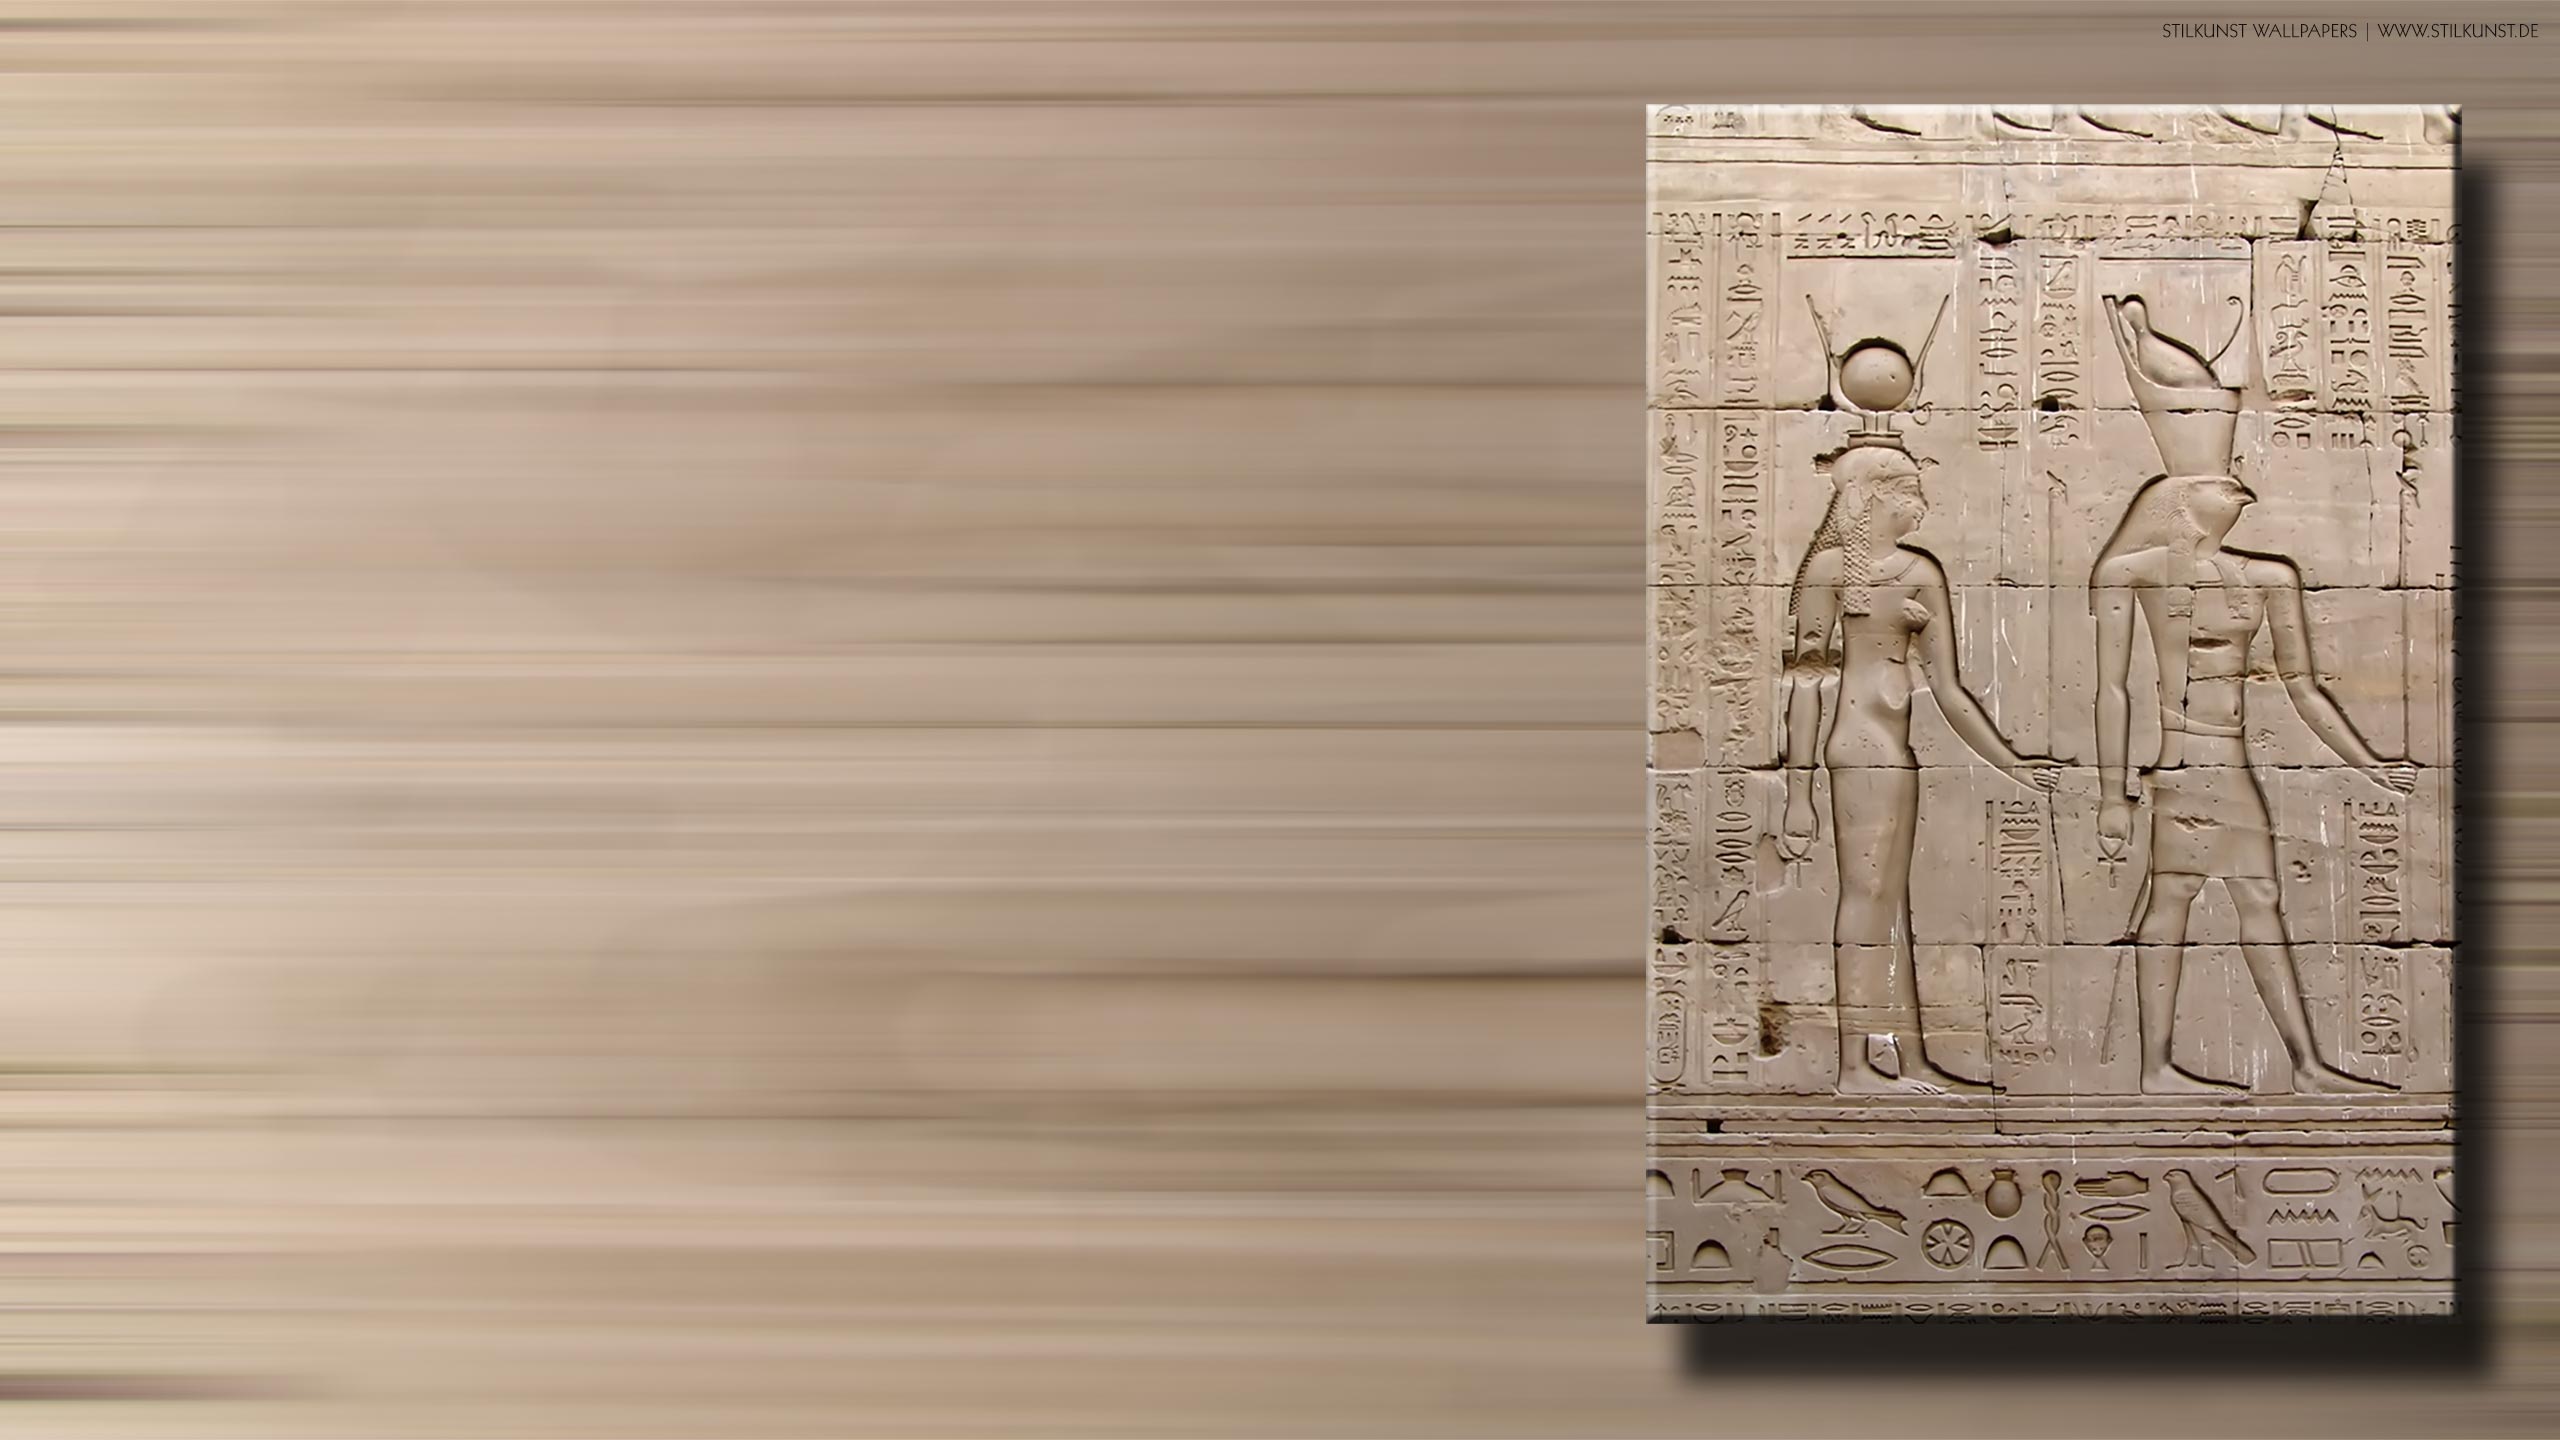 Hathor und Horus | 2560 x 1440px | Bild: ©by Sabrina | Reiner | www.stilkunst.de | Lizenz: CC BY-SA